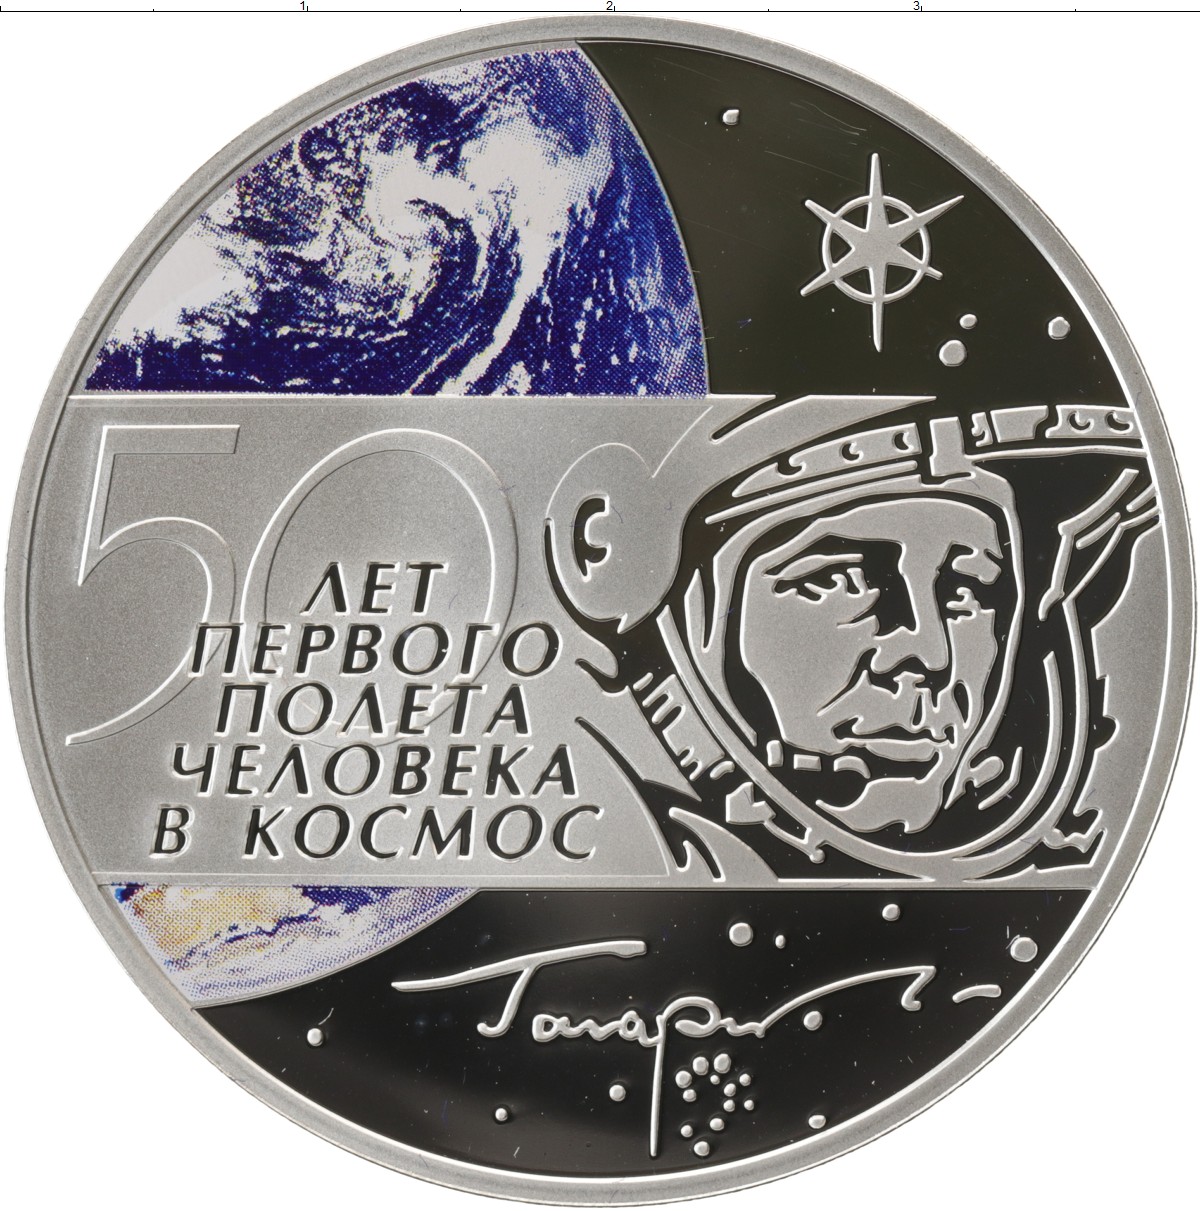 Первый полет человека в космос в монетах. Монета 60 лет первого полета человека в космос (Гагарин ю.а.). Монета 50 лет полета Гагарина. Монета 50 лет полётпервого человека в космос.